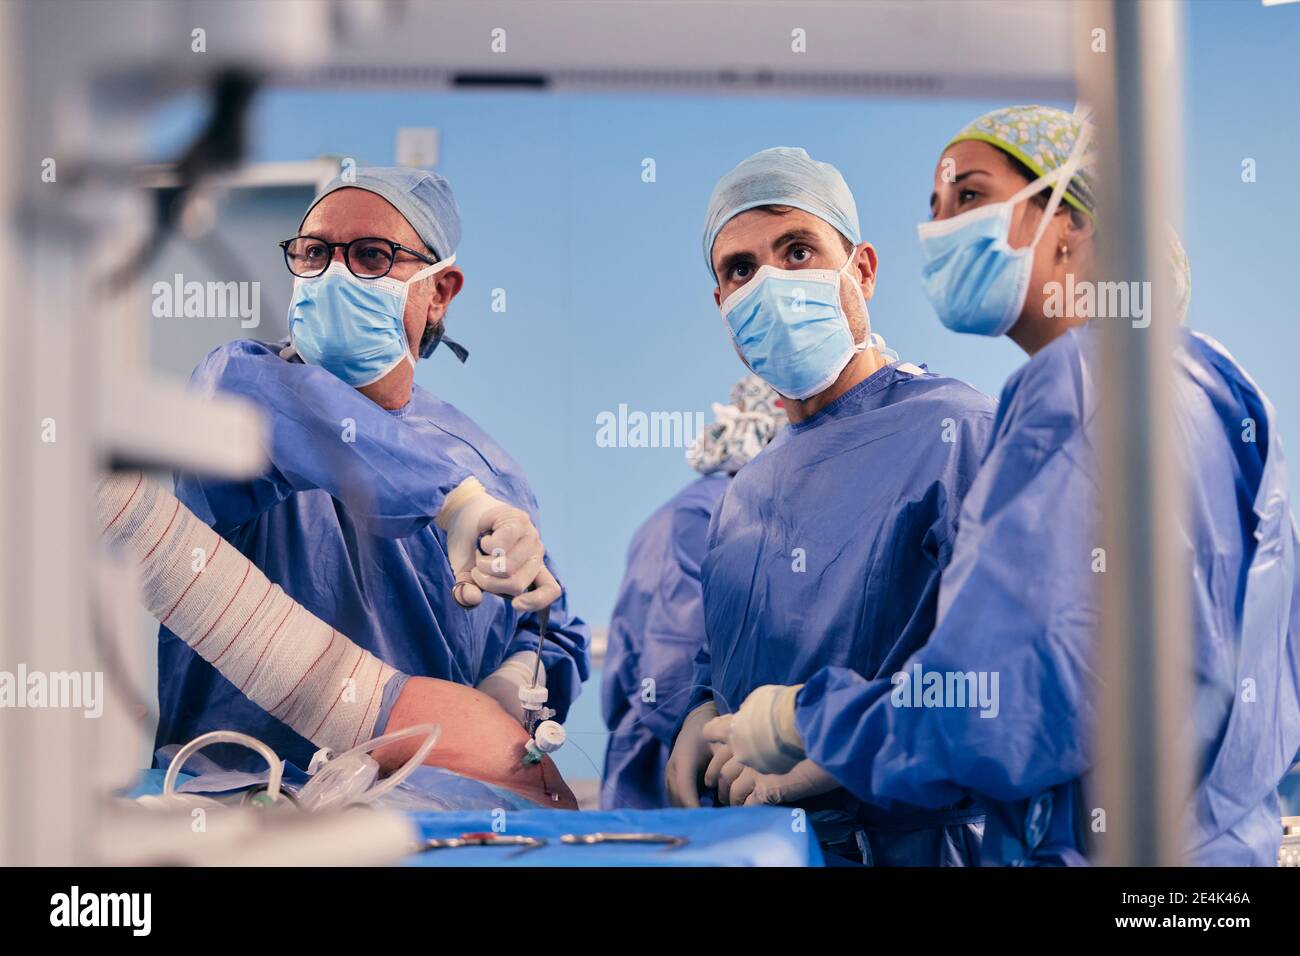 Squadra di chirurgo che indossa la maschera protettiva della faccia che opera chirurgia artroscopica della spalla in piedi nella sala operatoria Foto Stock